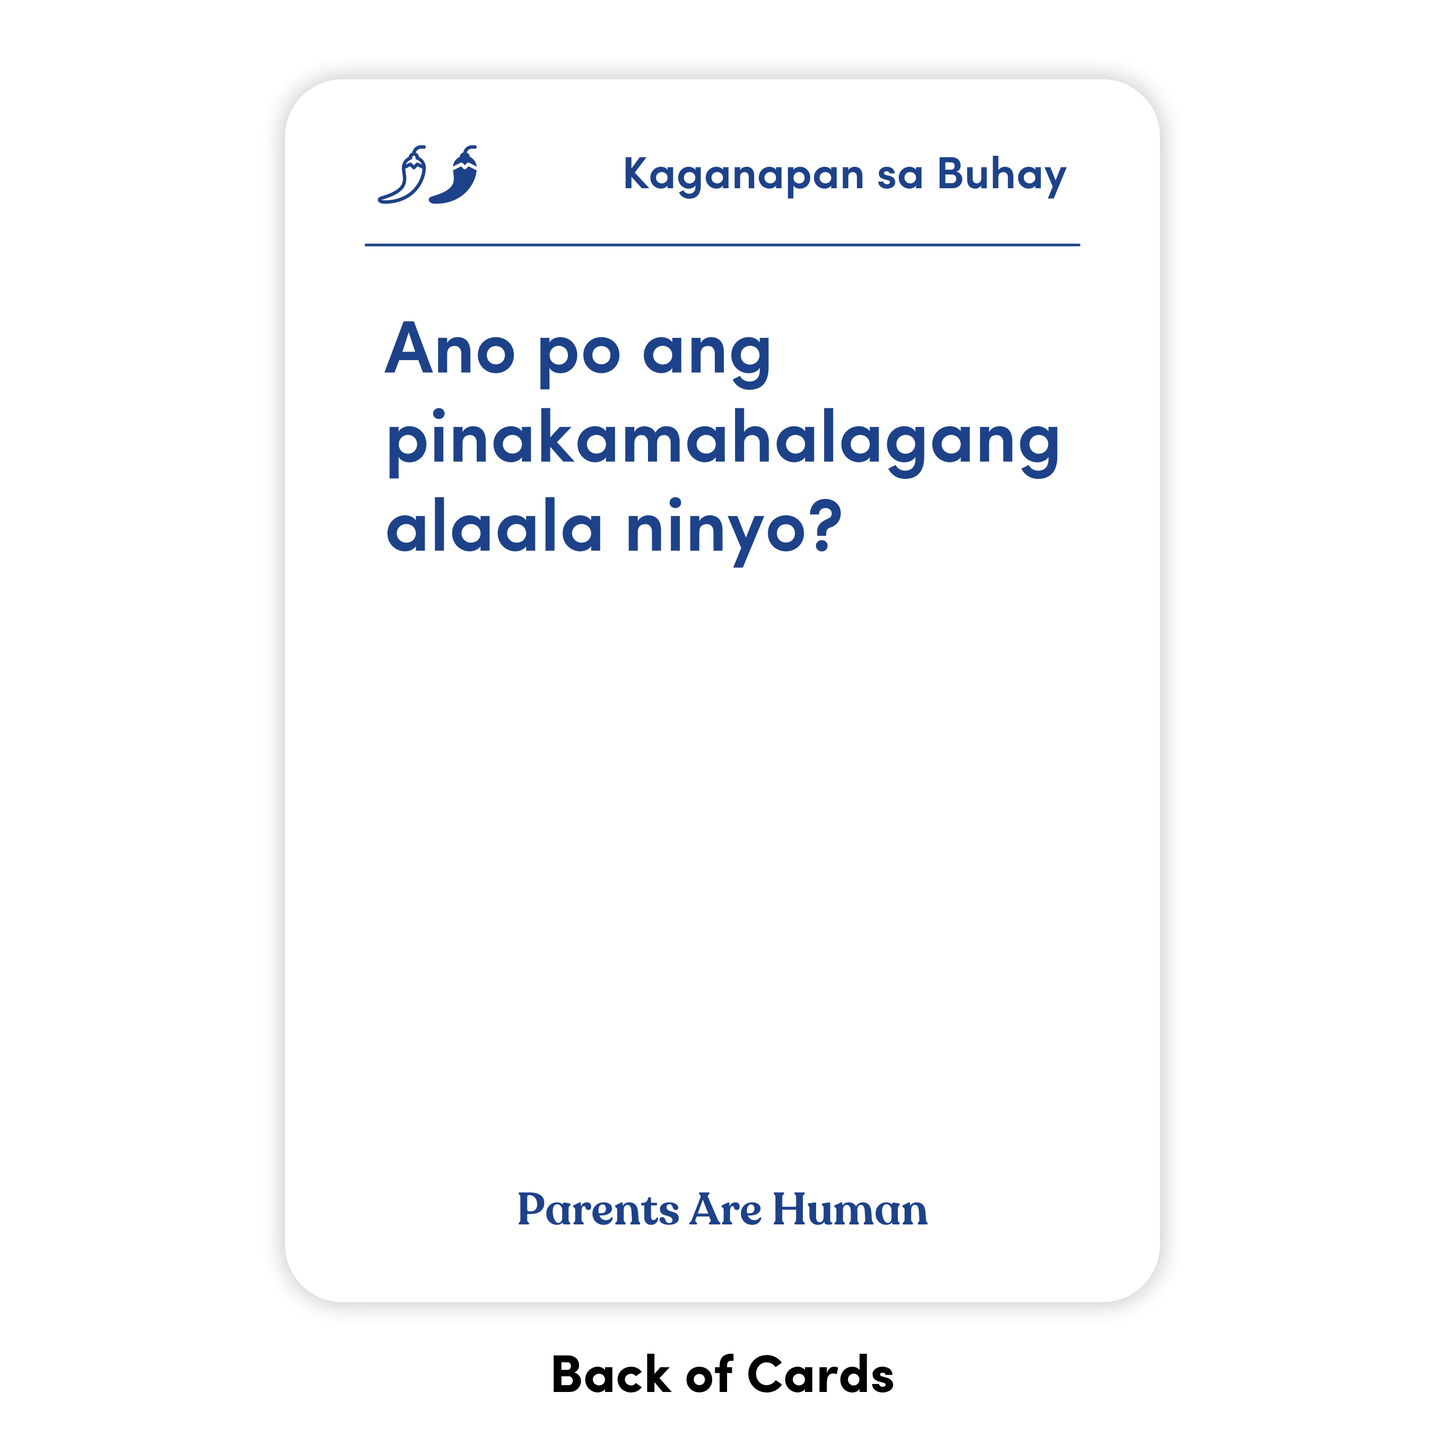 Parents Are Human (English + Filipino/Tagalog)